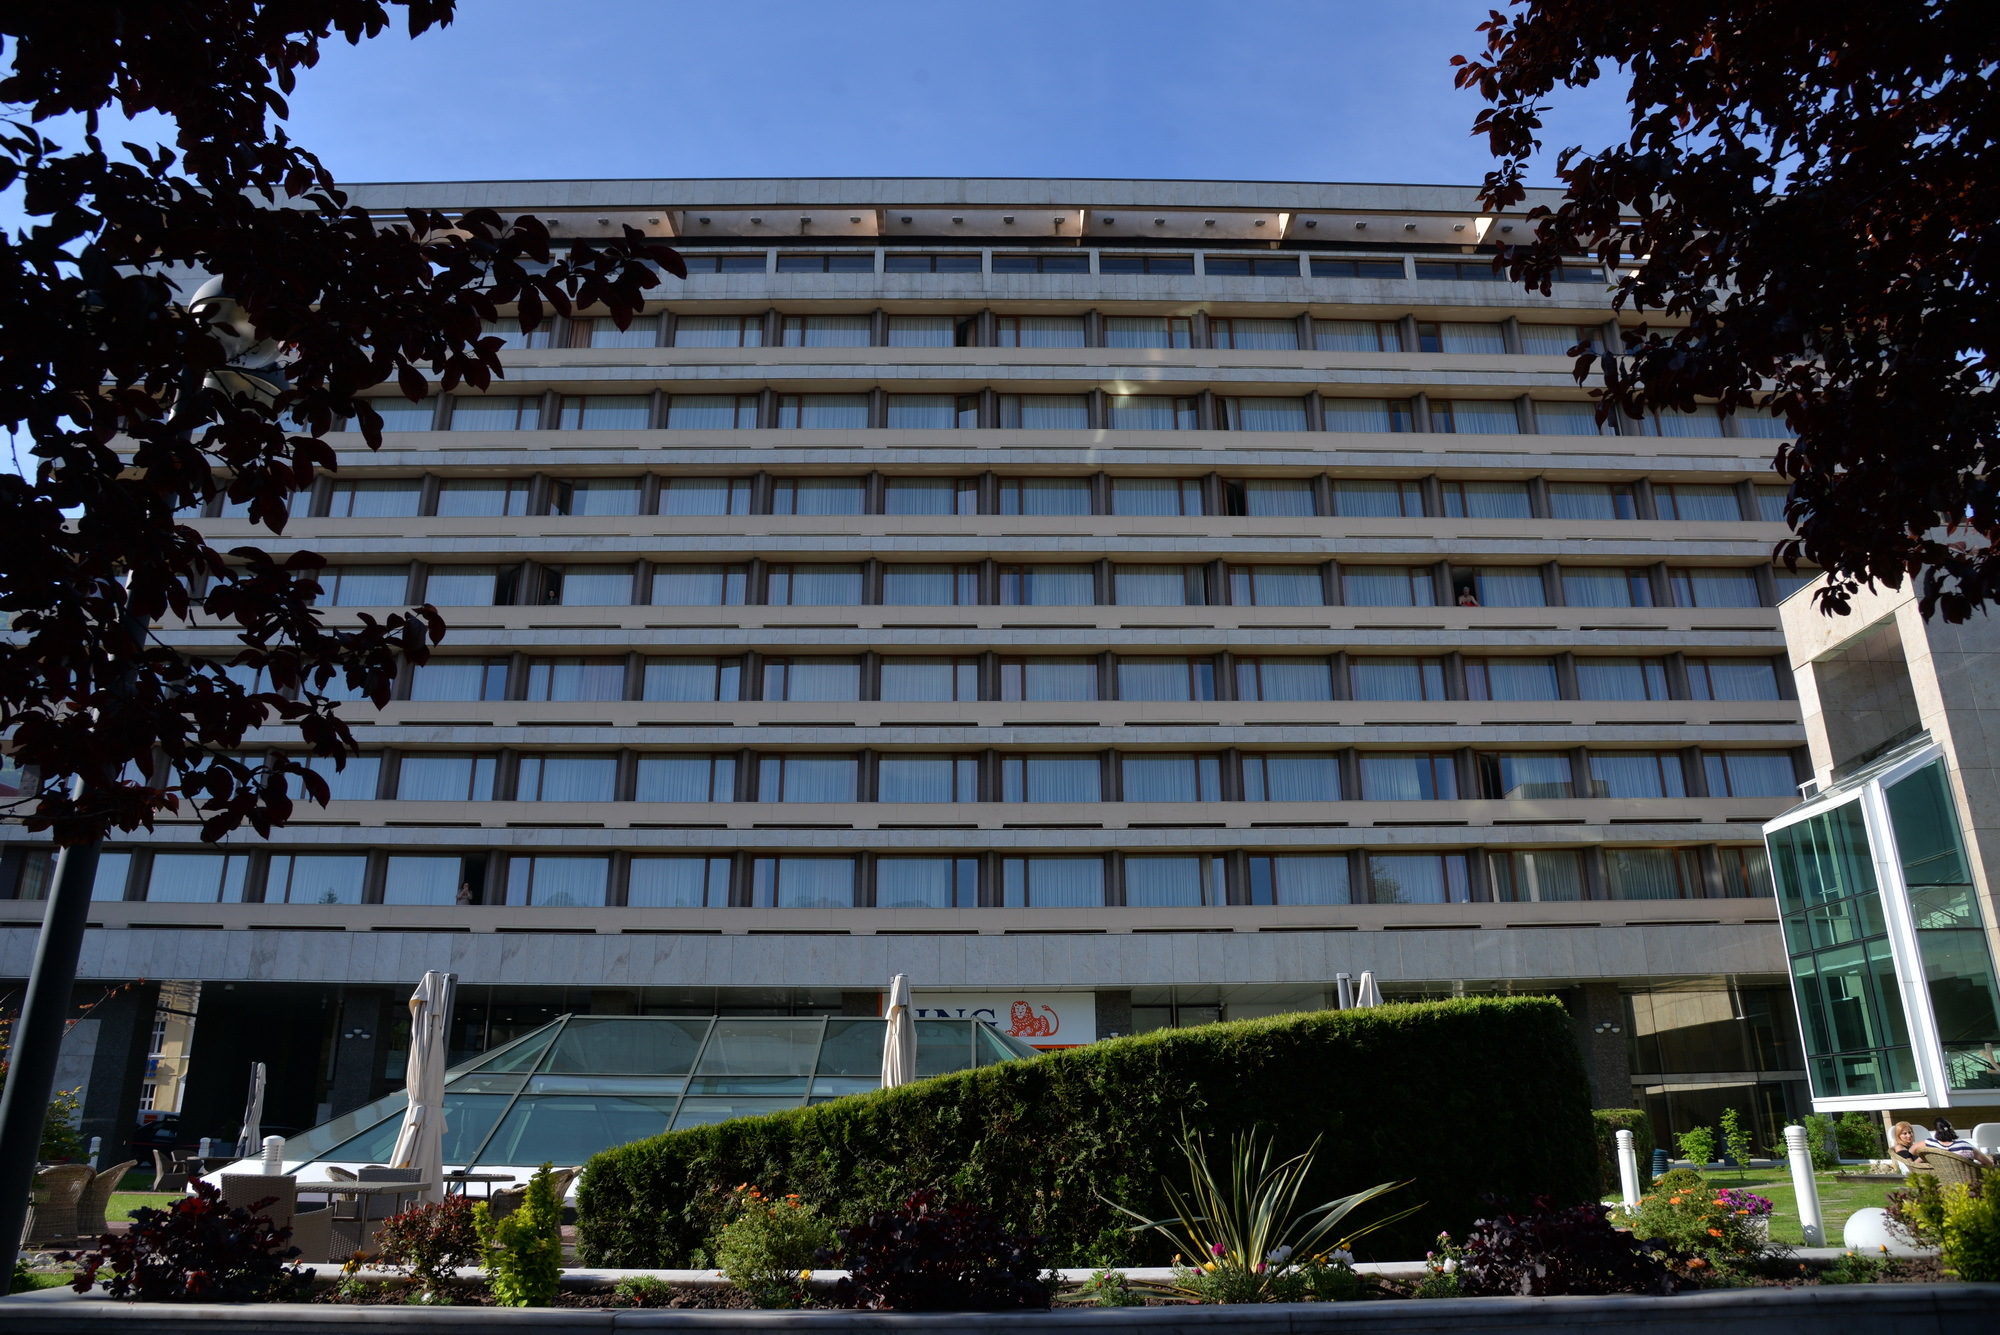 Hotelul Aro Palace din Braşov semnează o scrisoare de intenţie pentru primul acord de franciză sub marca Hyatt din Romania. Hotelul va fi operat sub numele Hyatt Regency, Aro Palace Brasov